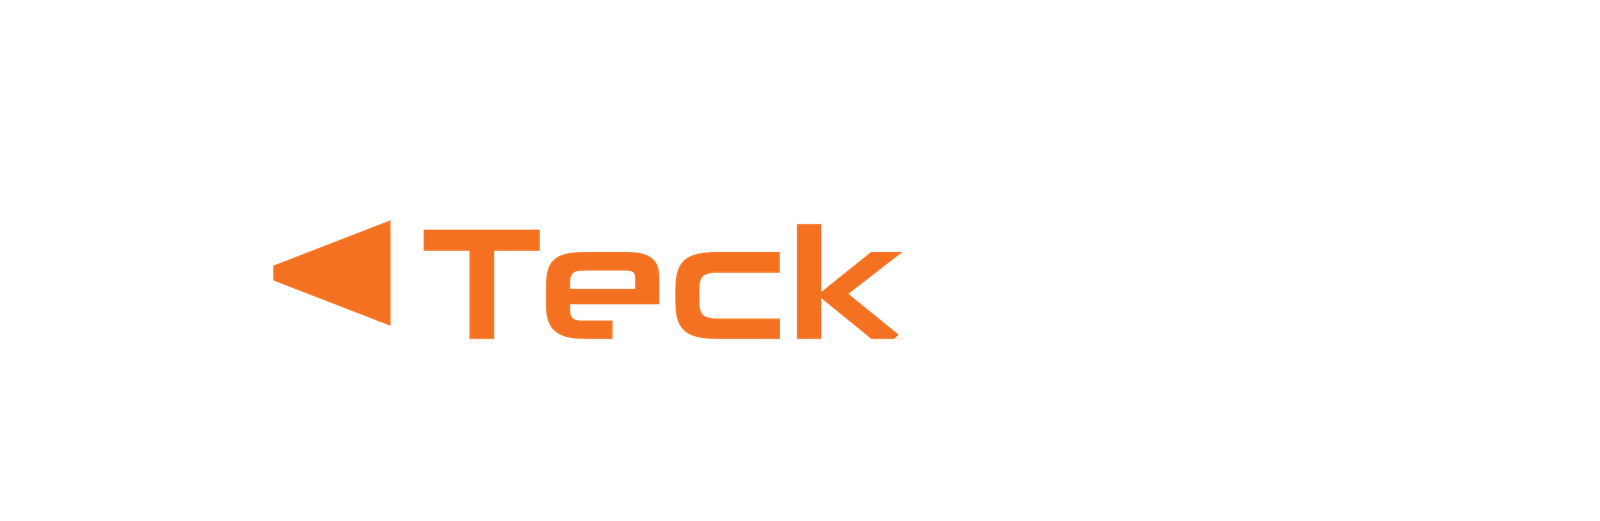 SprayTeckXpert Logo